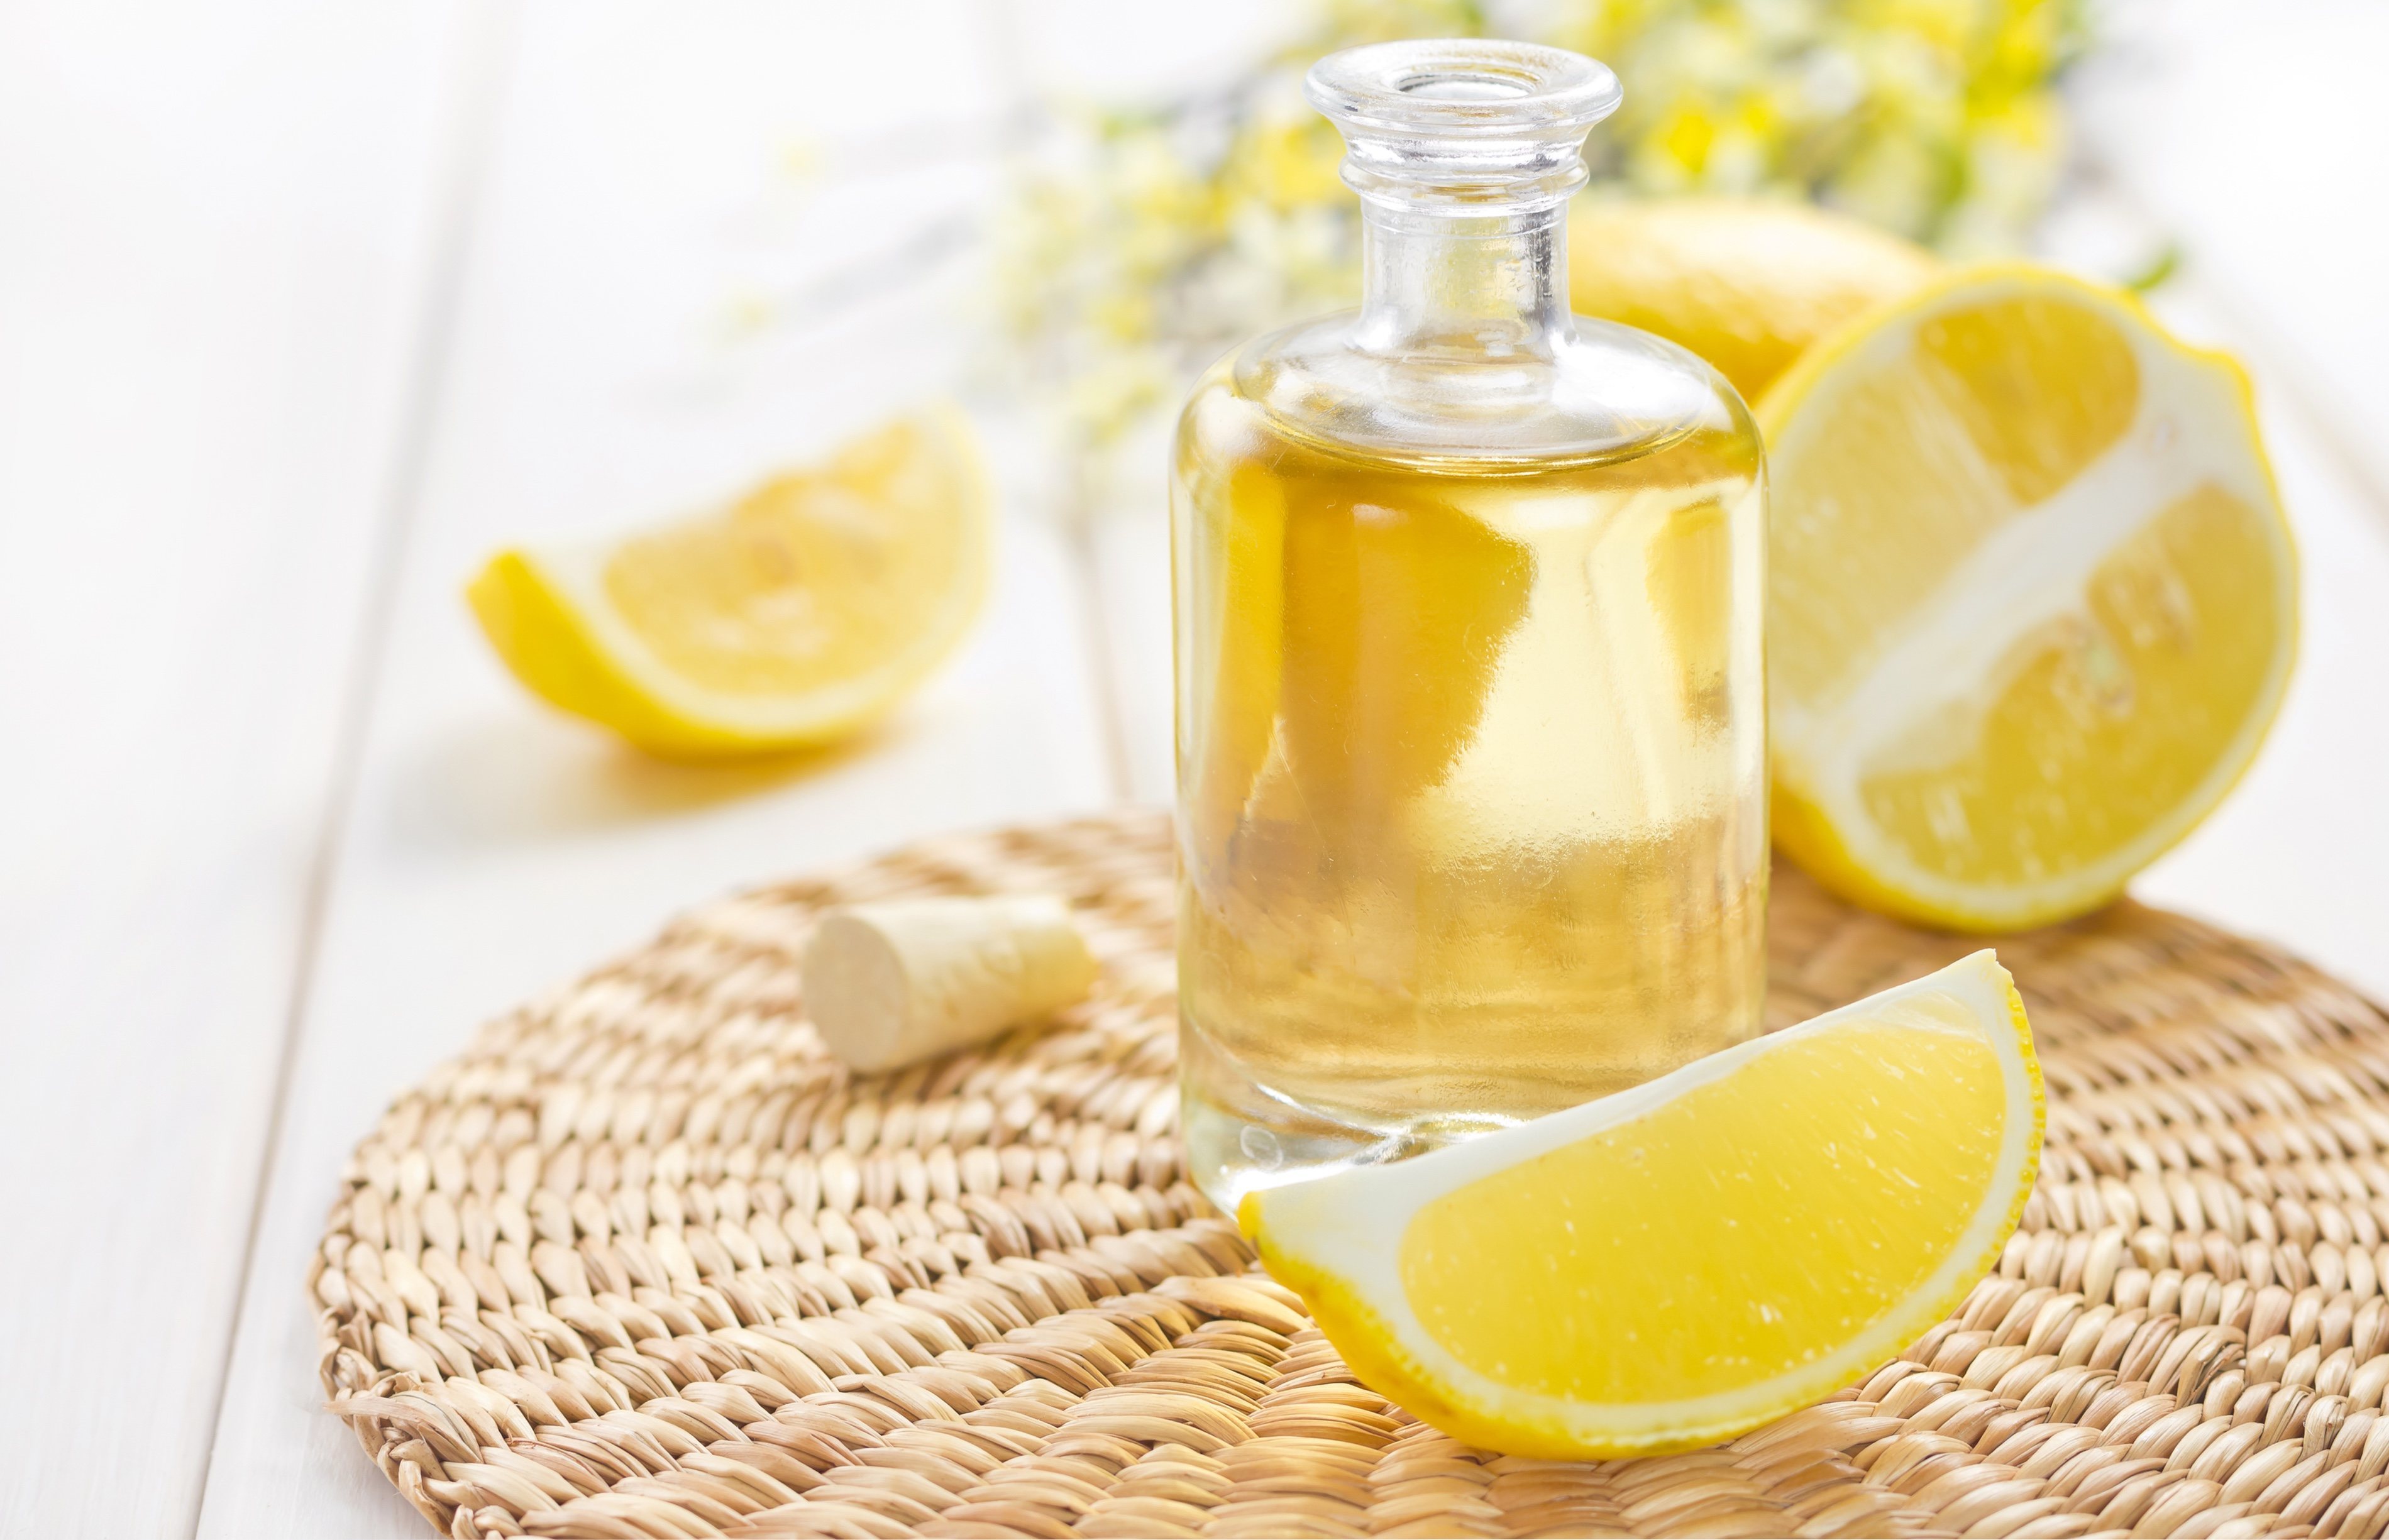 Aceite esencial de limón